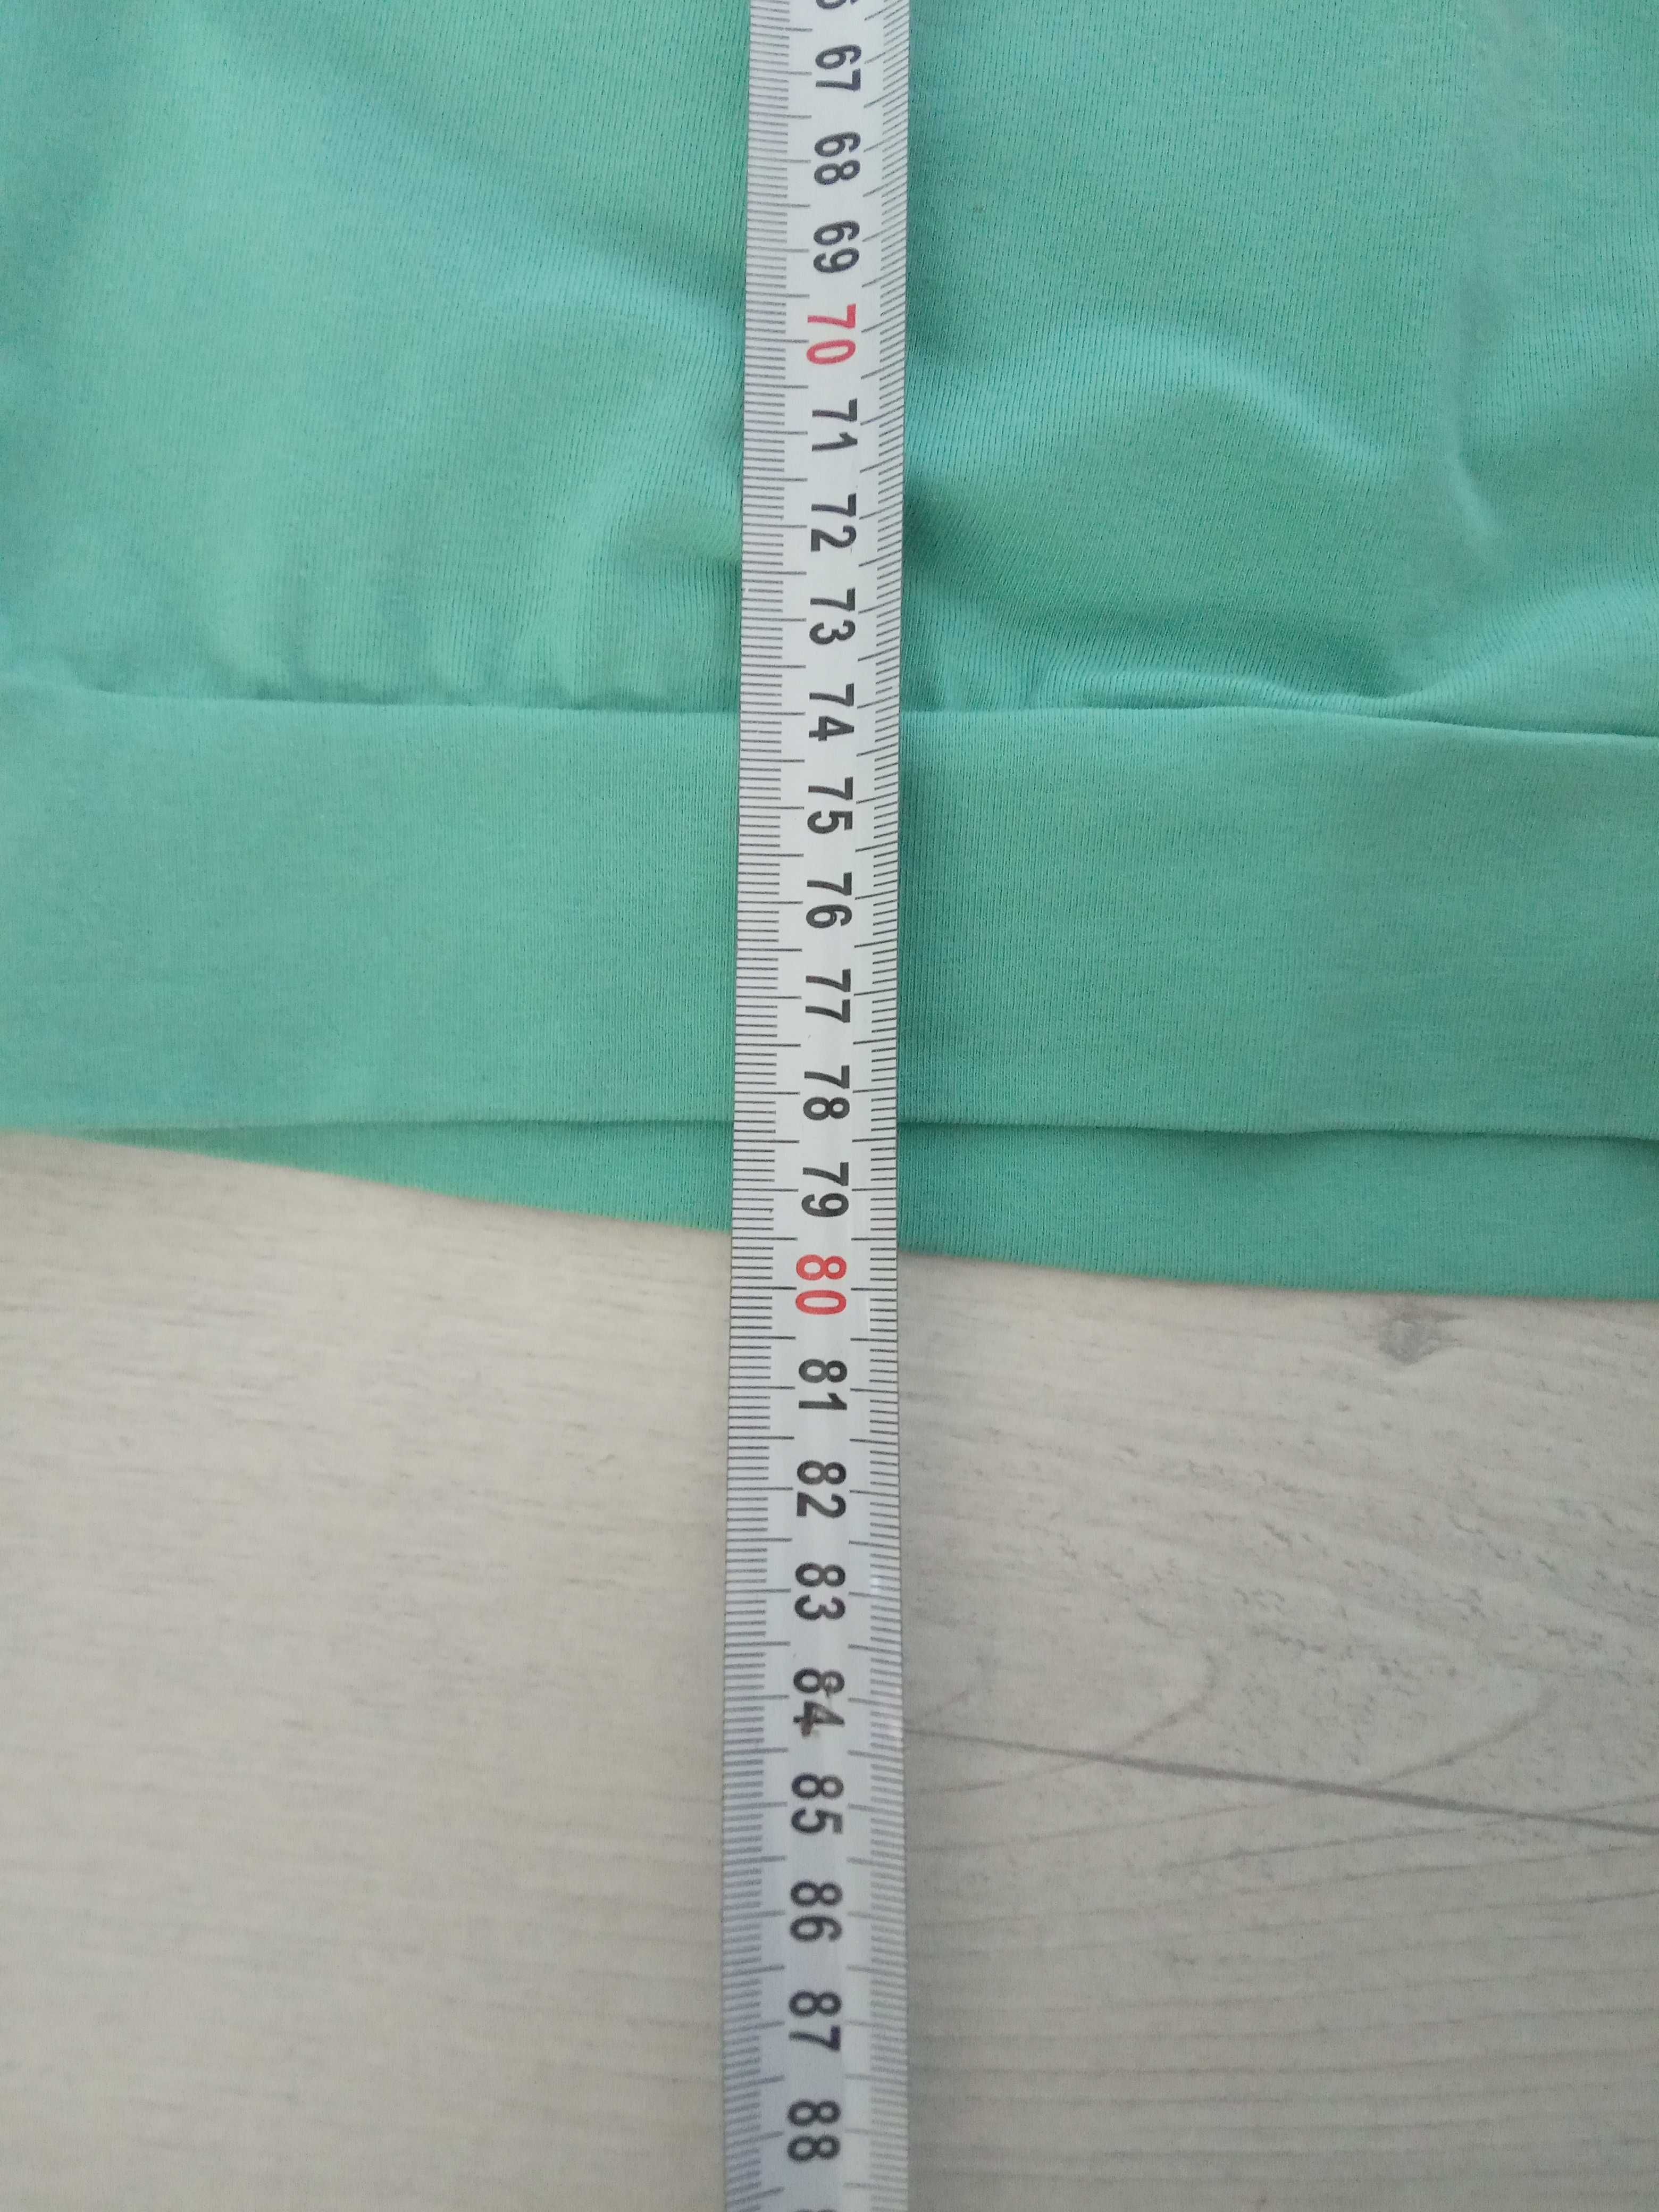 Mini sukienka tunika miętowa z dżetami 36/38 dopasowana elastyczna